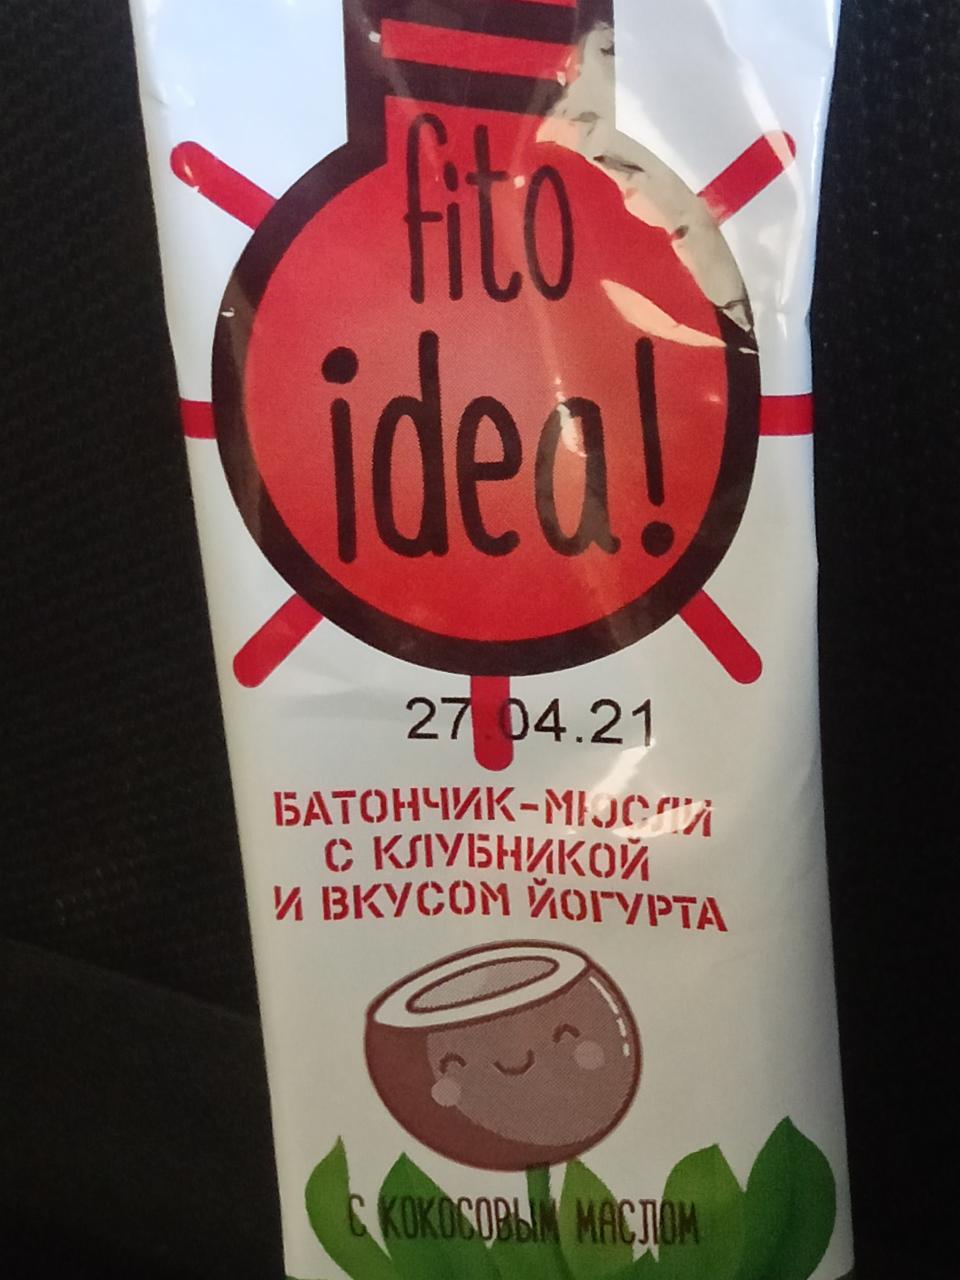 Фото - Батончик-мюсли с клубникой и вкусом йогурт Fito idea!